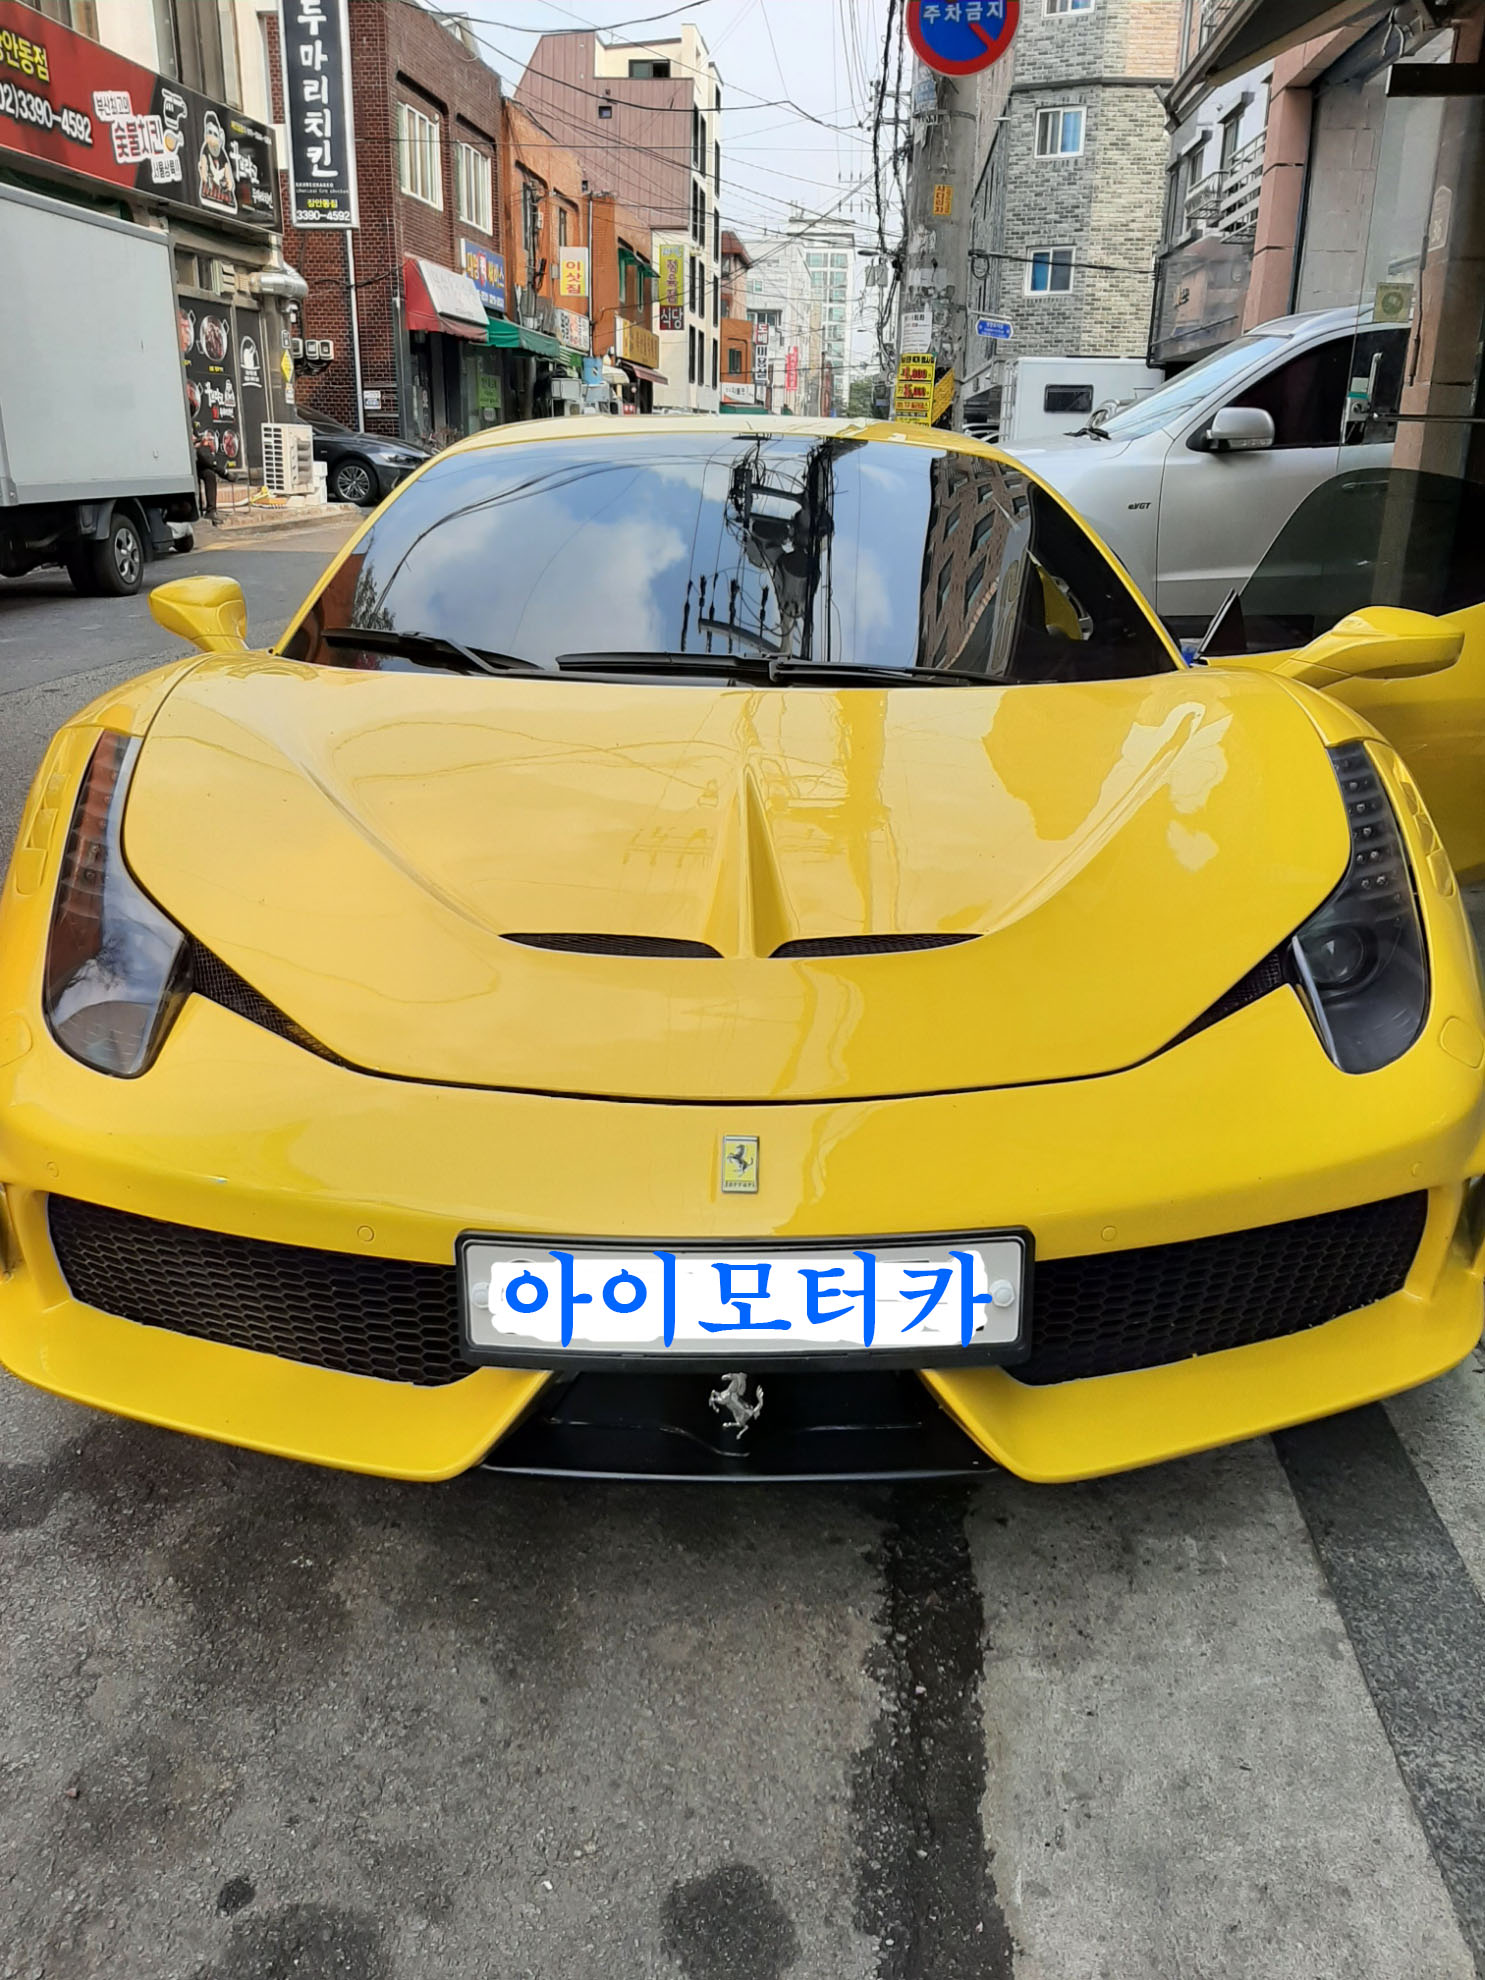 Ferrari side mirror